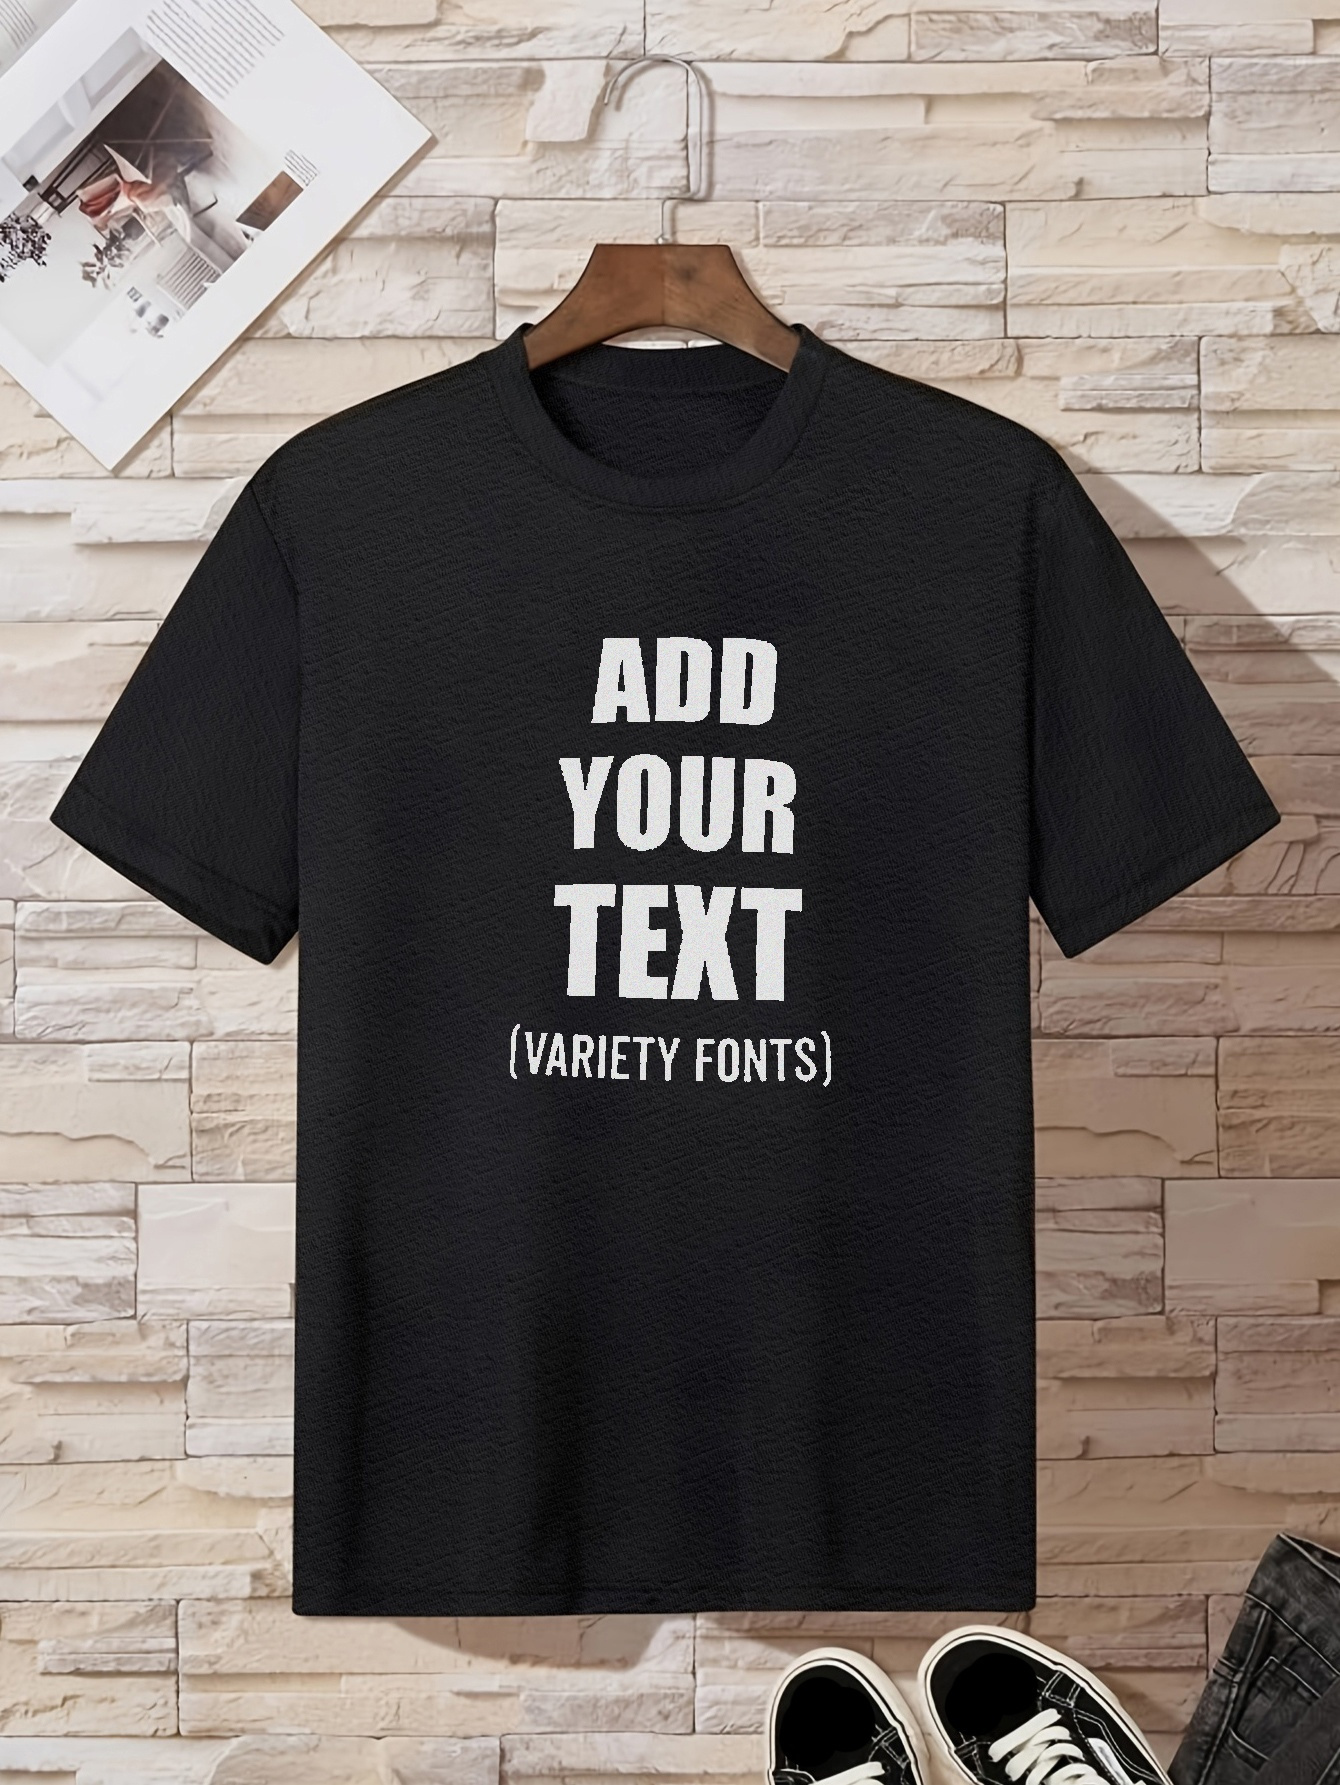 Camisetas personalizadas para hombre, camiseta de algodón personalizada,  añade texto de imagen, camiseta de manga corta con estampado